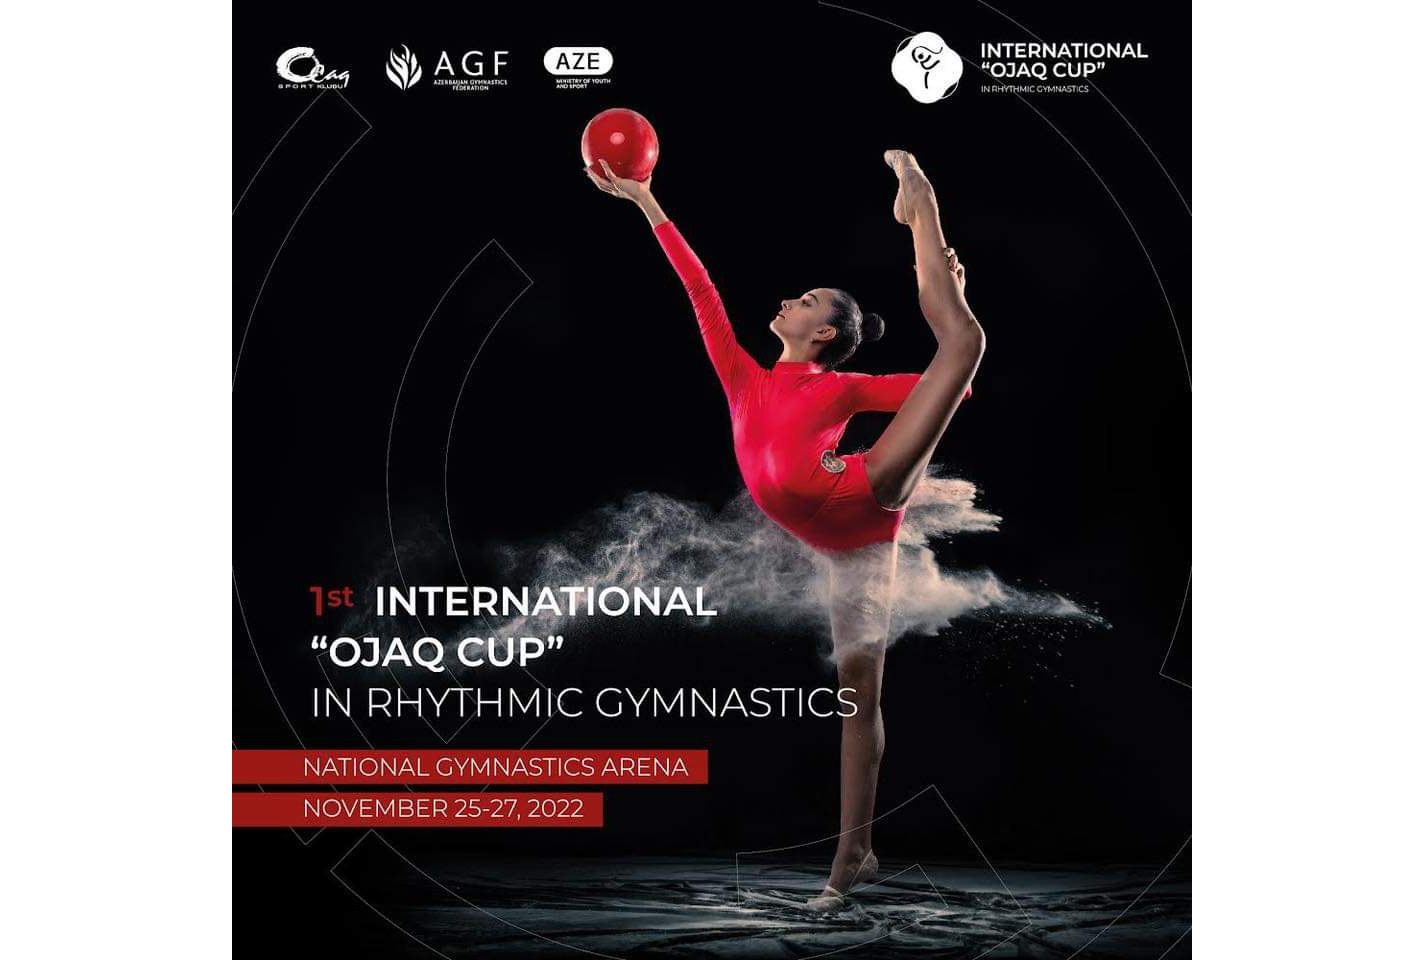 1st Ojag International Rhythmic Gymnastics Cup kicks off in Baku